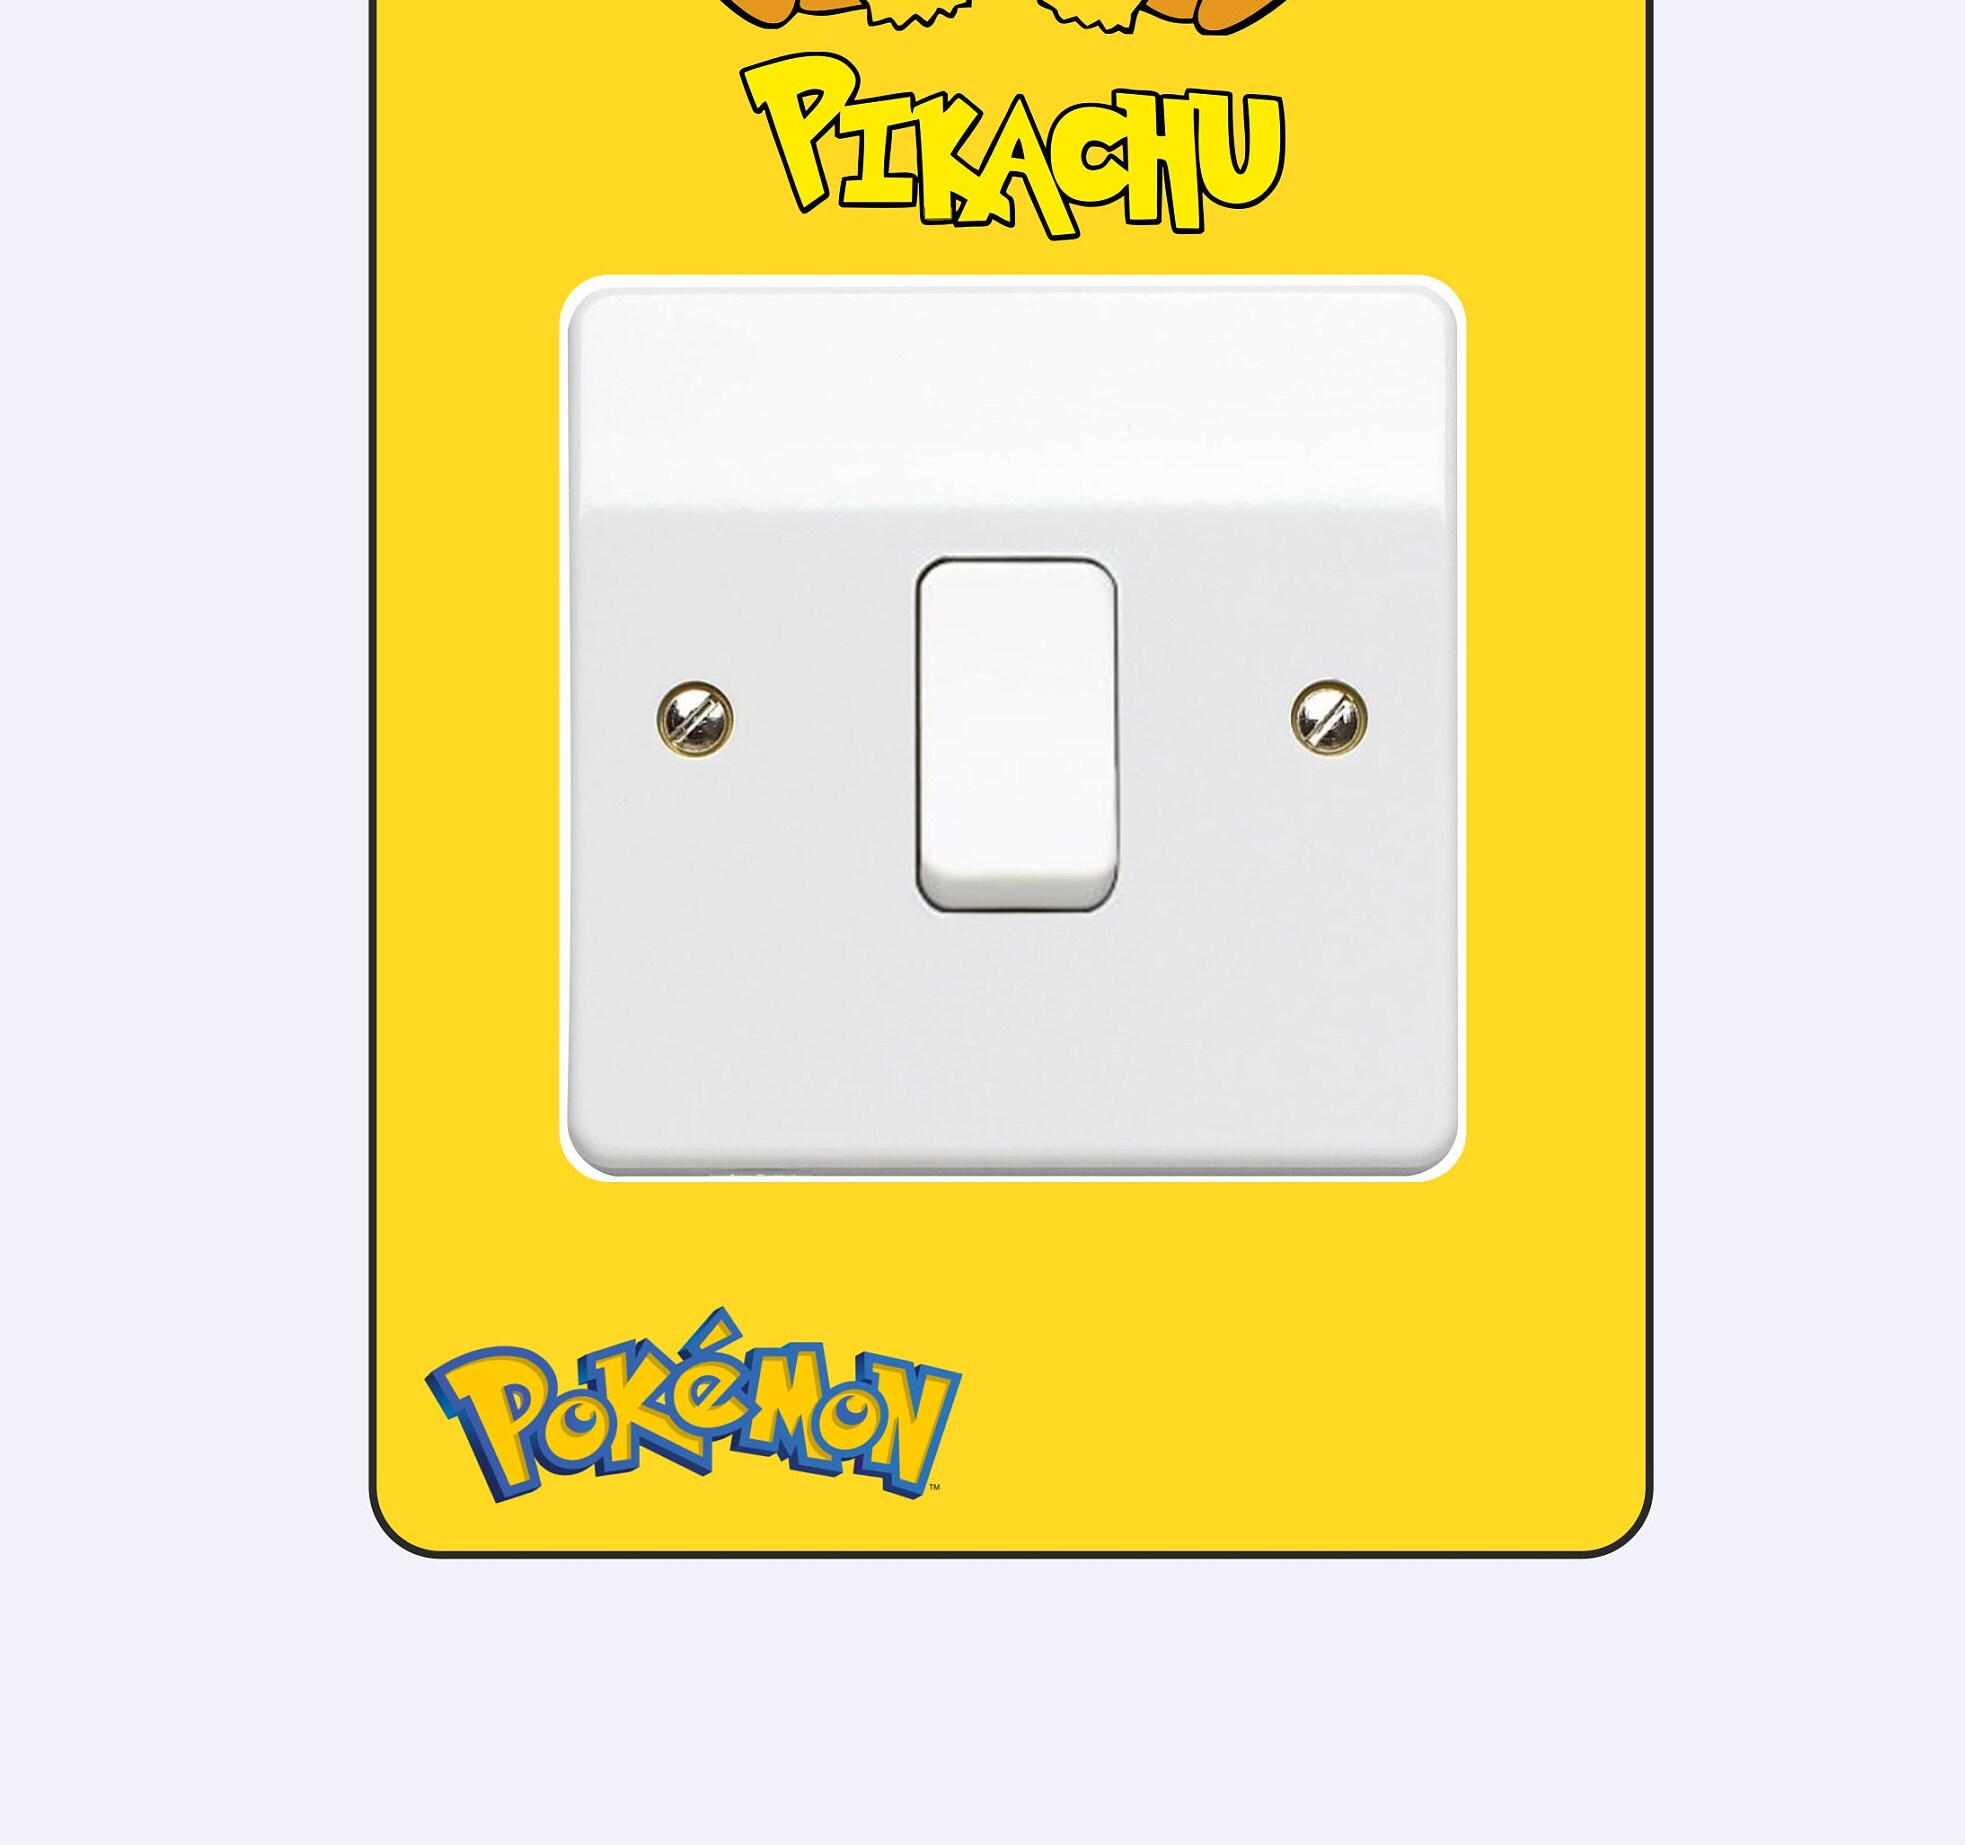 Stickers Pokémon Sacha et Pikachu - Stickers muraux Pikachu